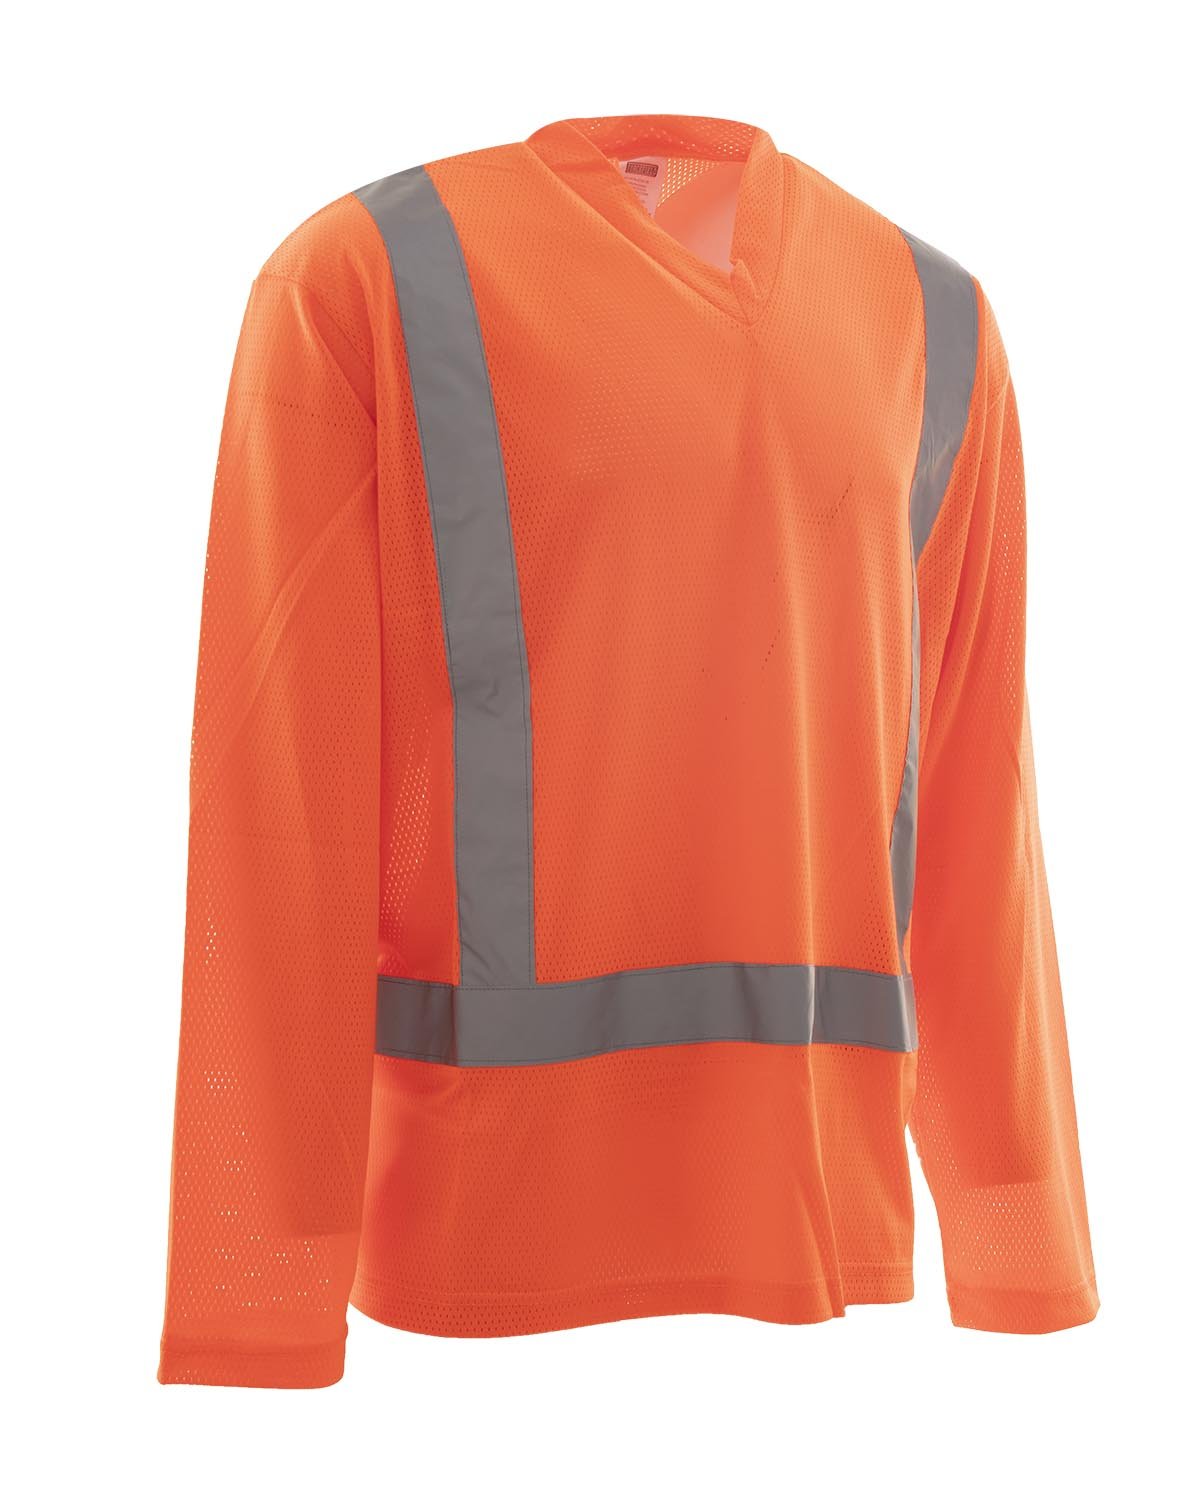 T-shirt Orange à Manches Longues et Col en V en Poly Maille - 3XL